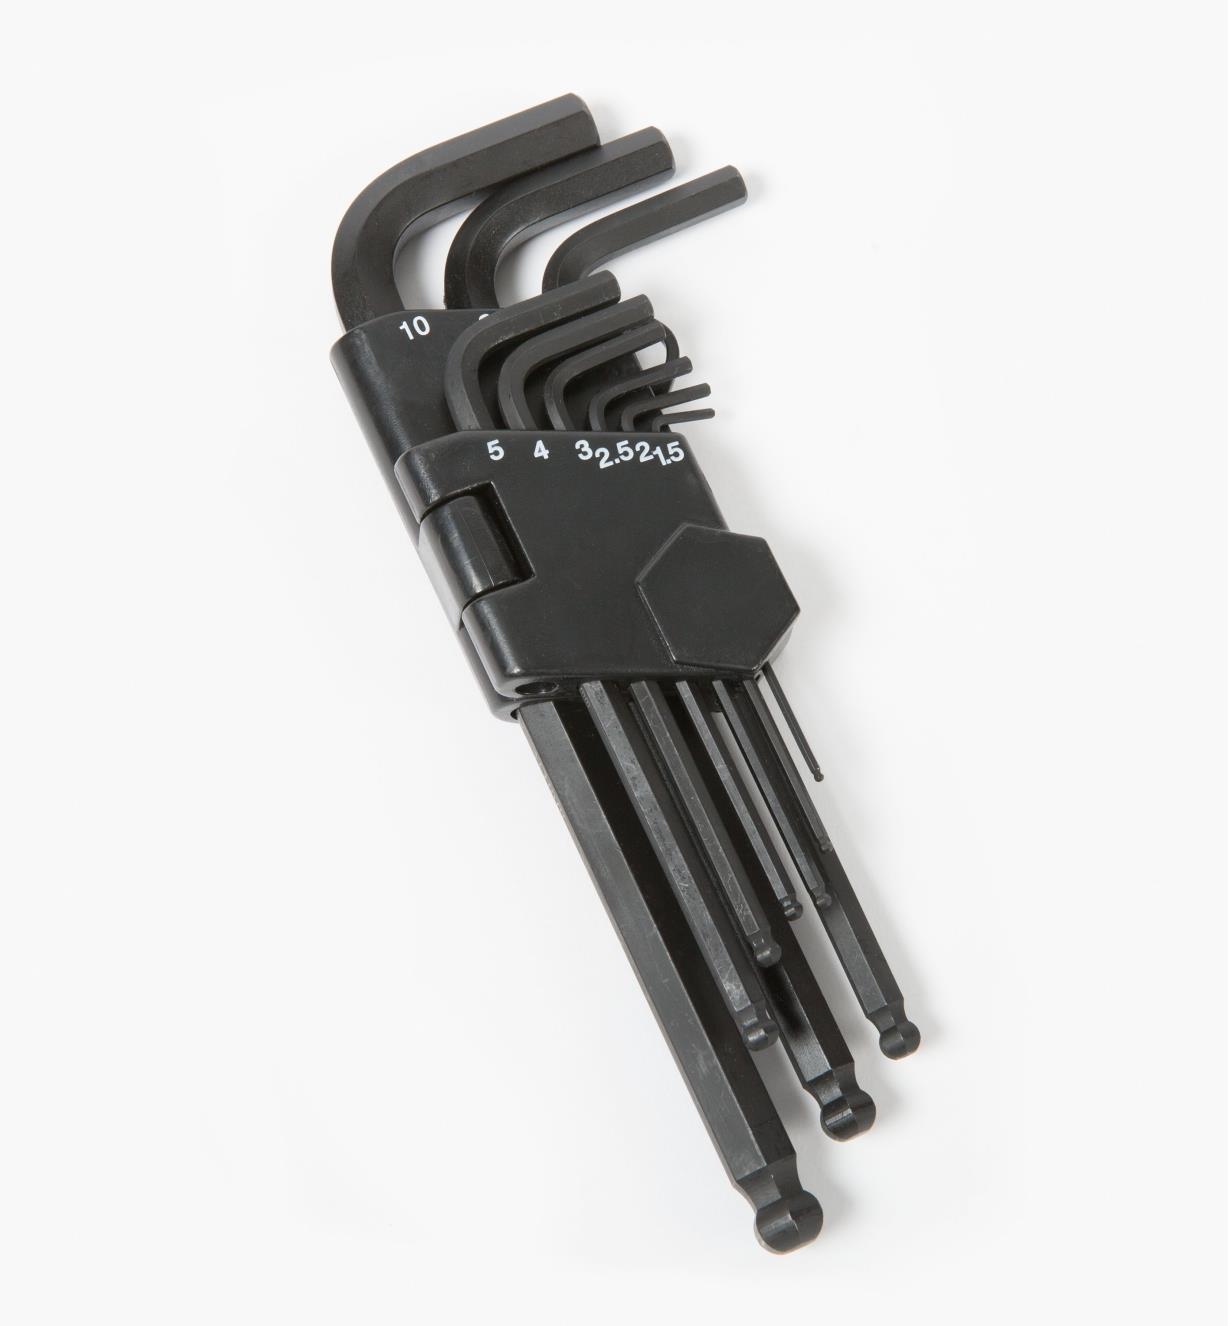 Allen Key Hex Key LONG IMPERIAL 1/8 inch Hexagonal Wrench Key Keys 911-LI 